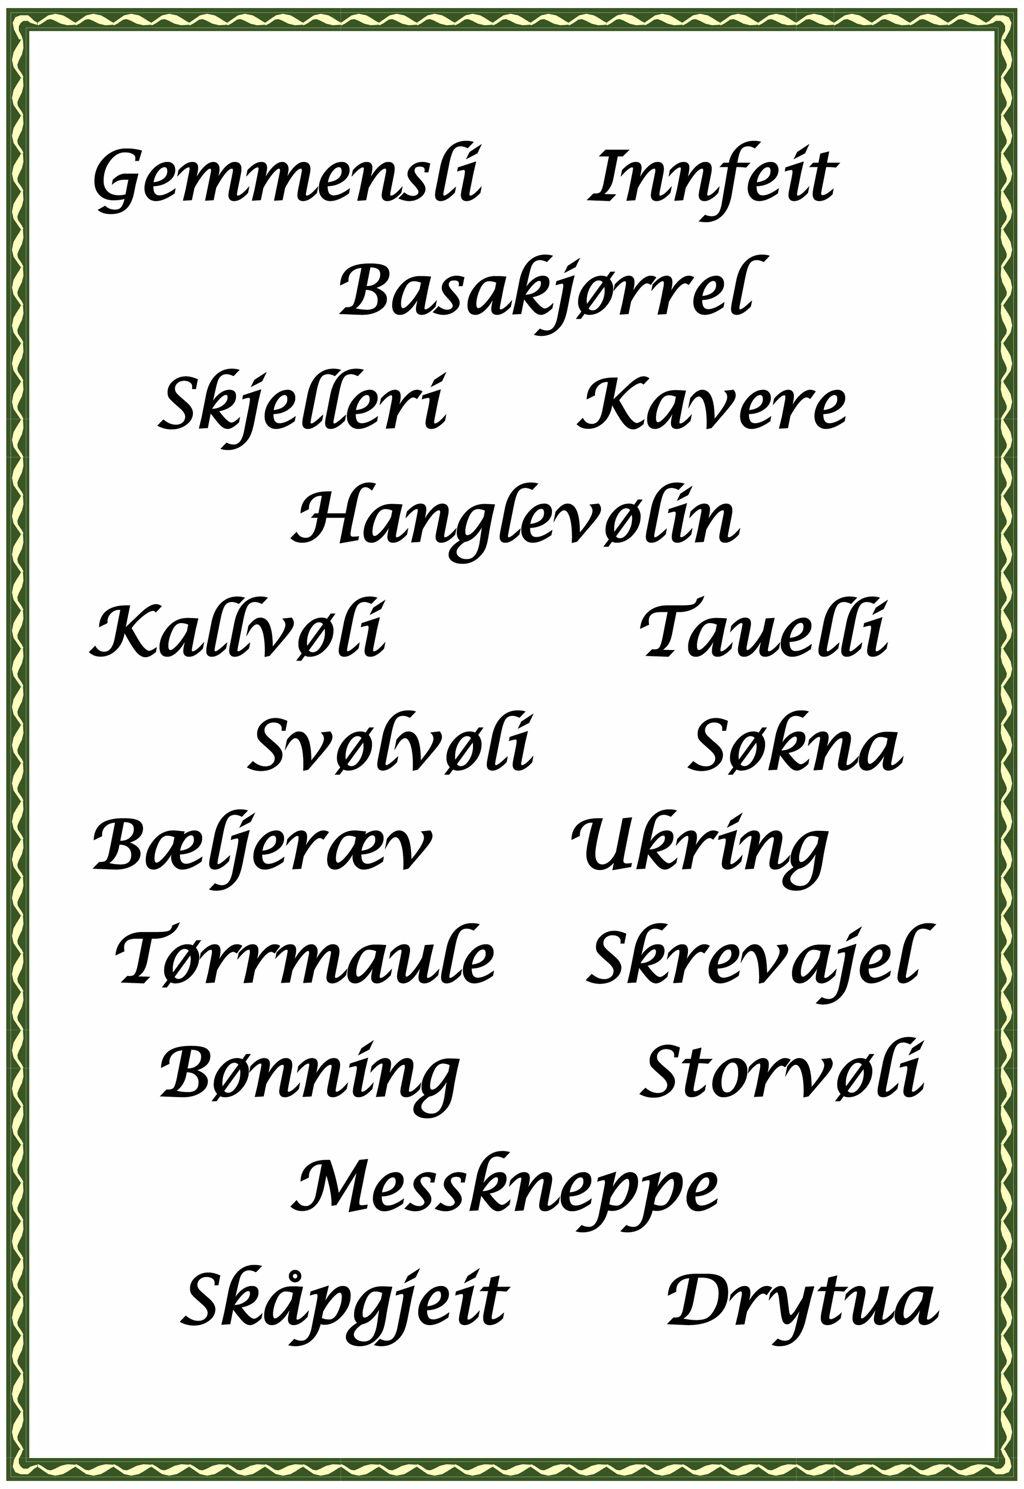 Populære dialektplakater i Ullensaker 